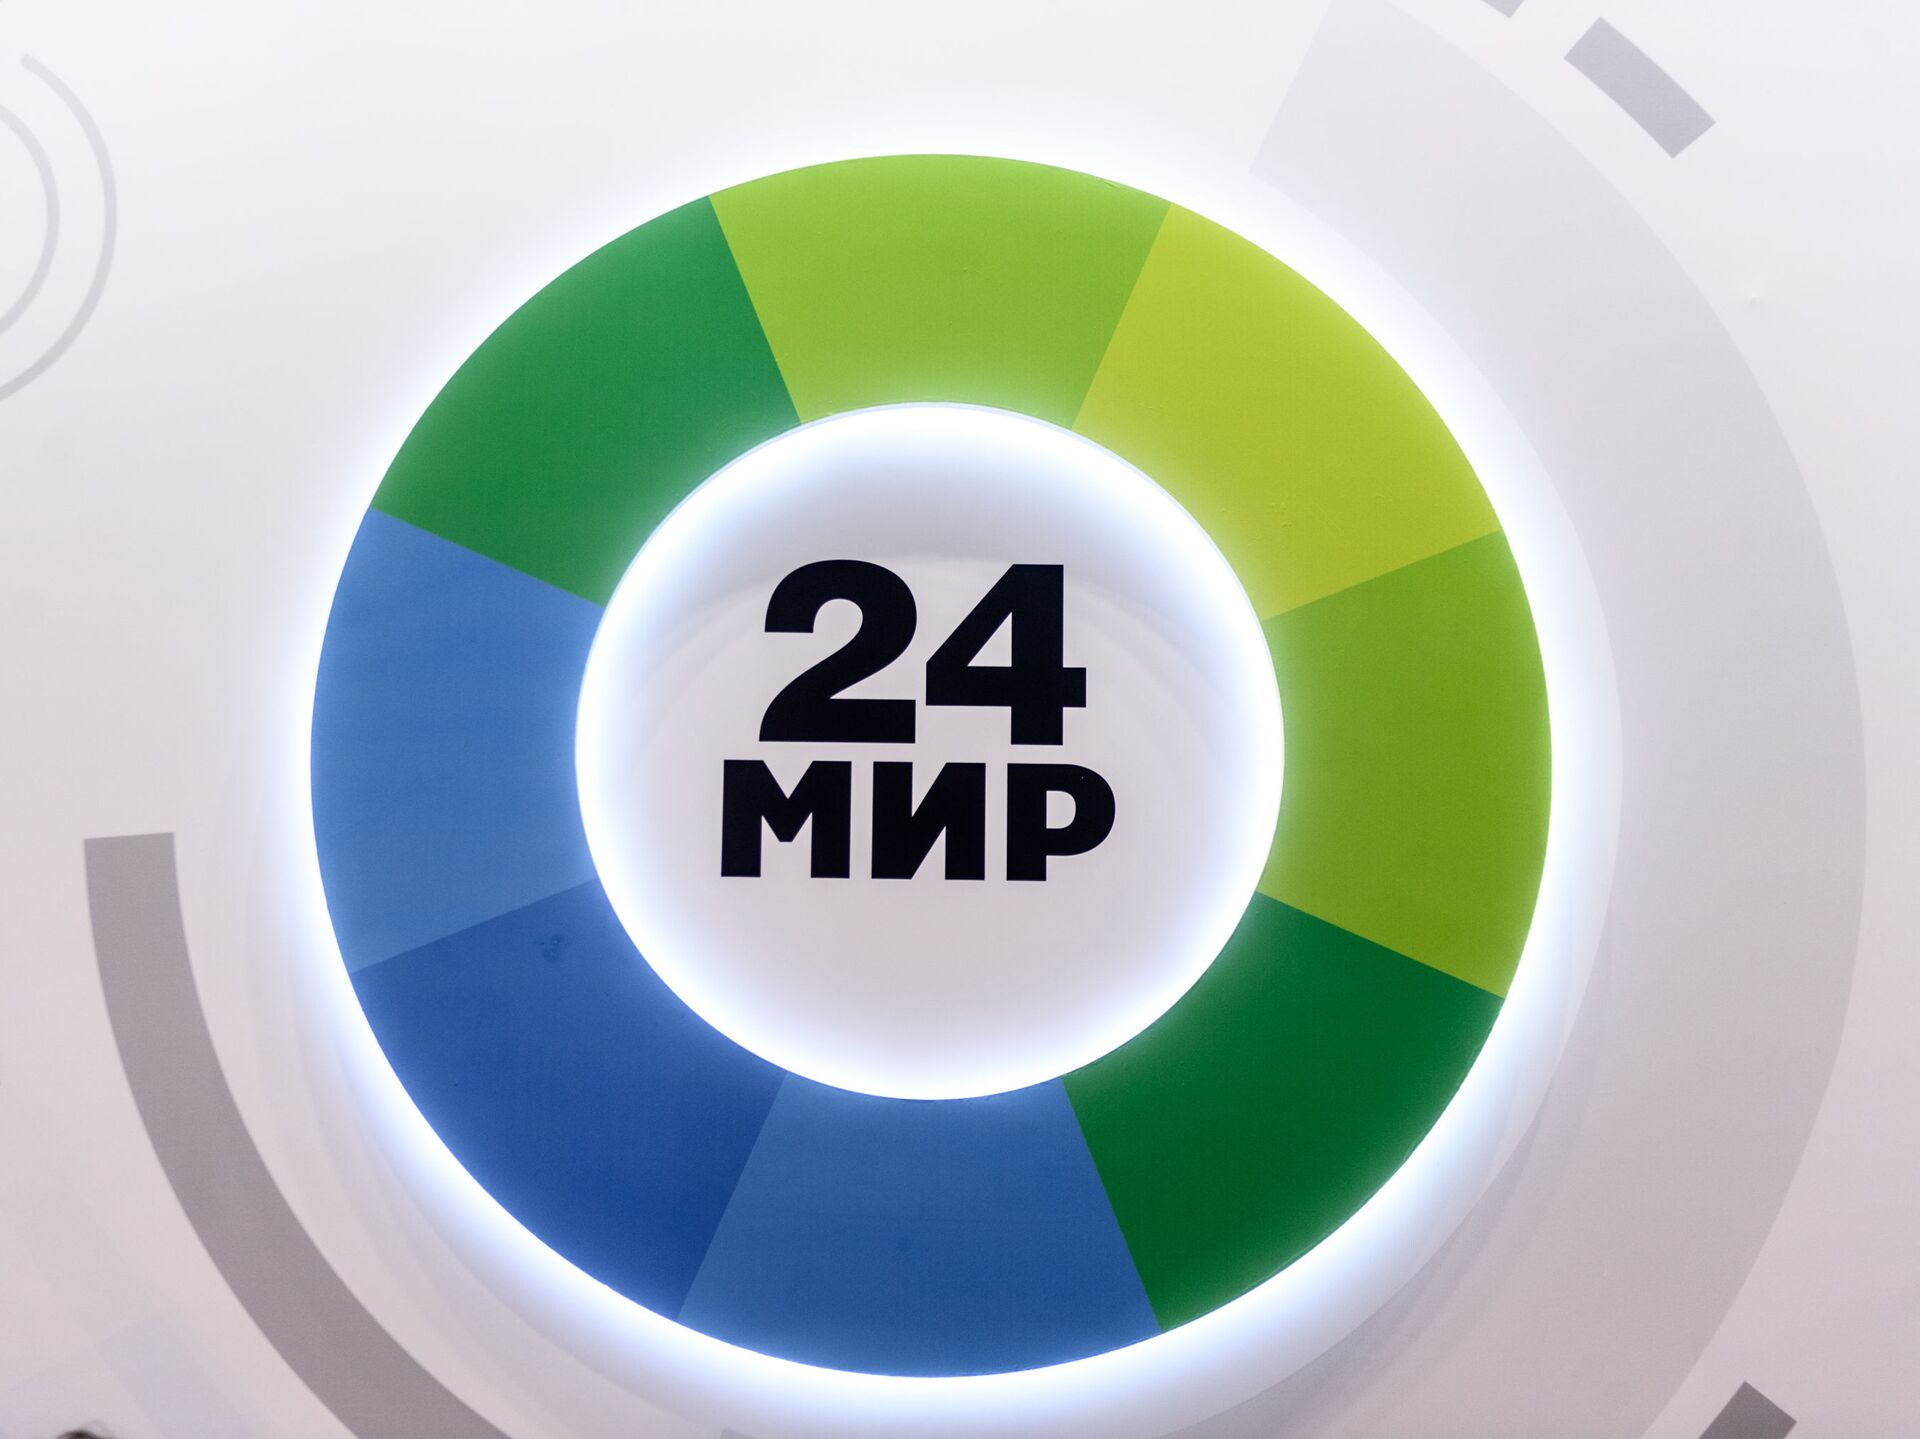 Телеканал мир видео. Логотип телеканала мик24. Мир 24. Телеканал мир 24. Эмблема телеканала мир.